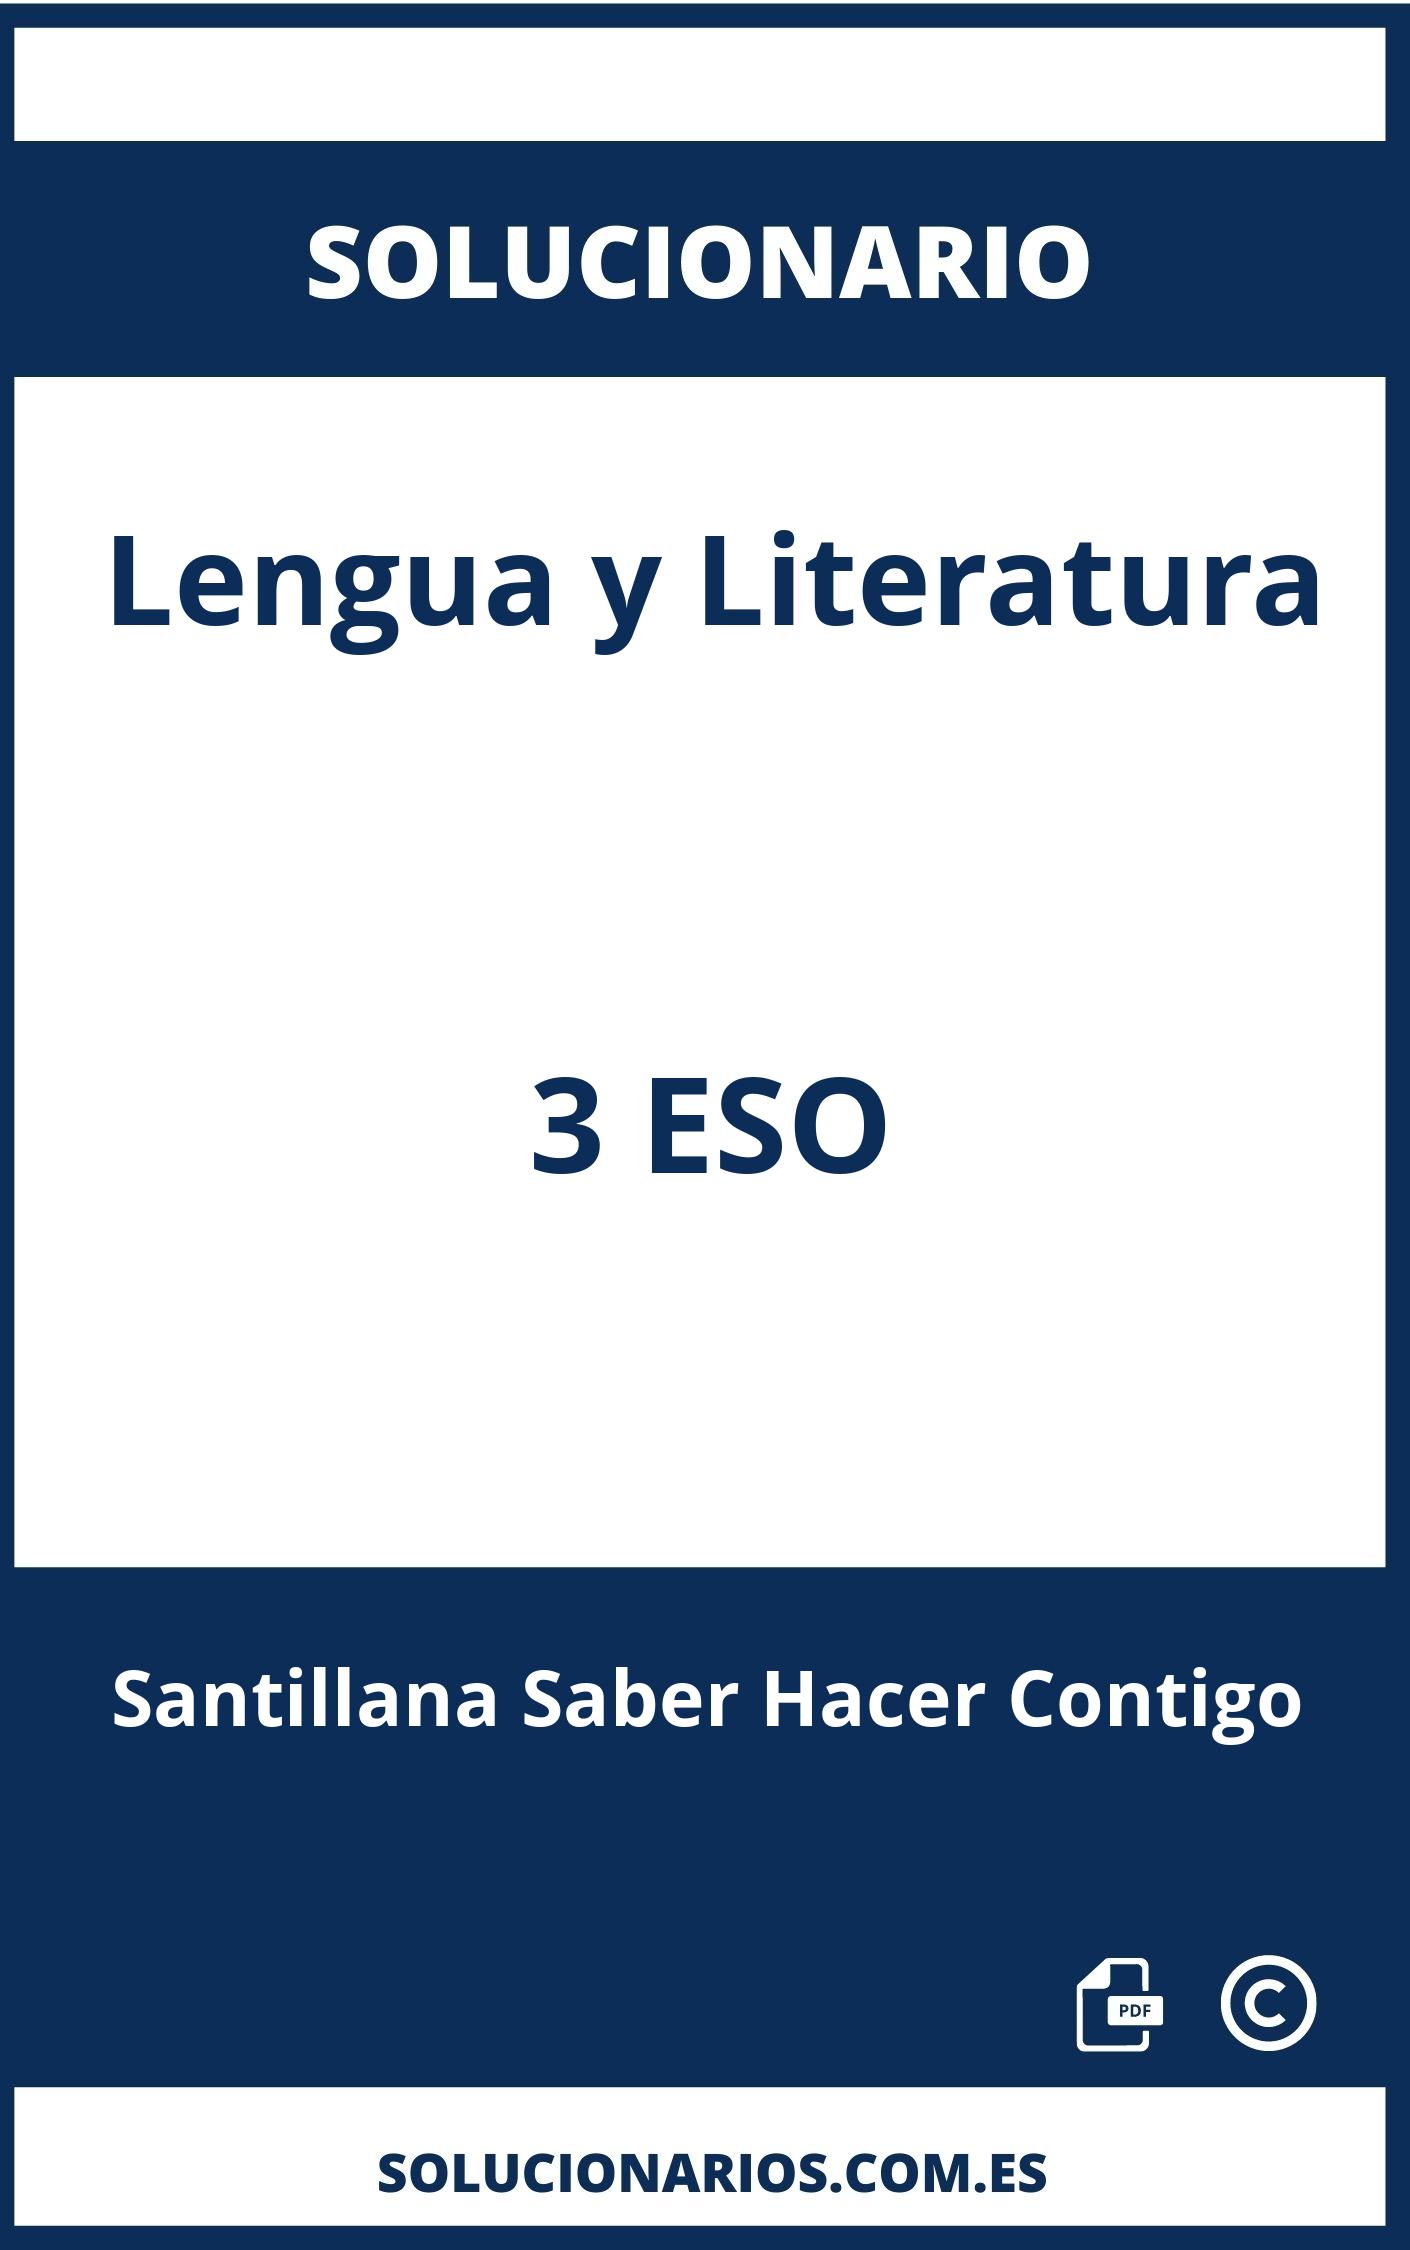 Solucionario Lengua y Literatura 3 ESO Santillana Saber Hacer Contigo